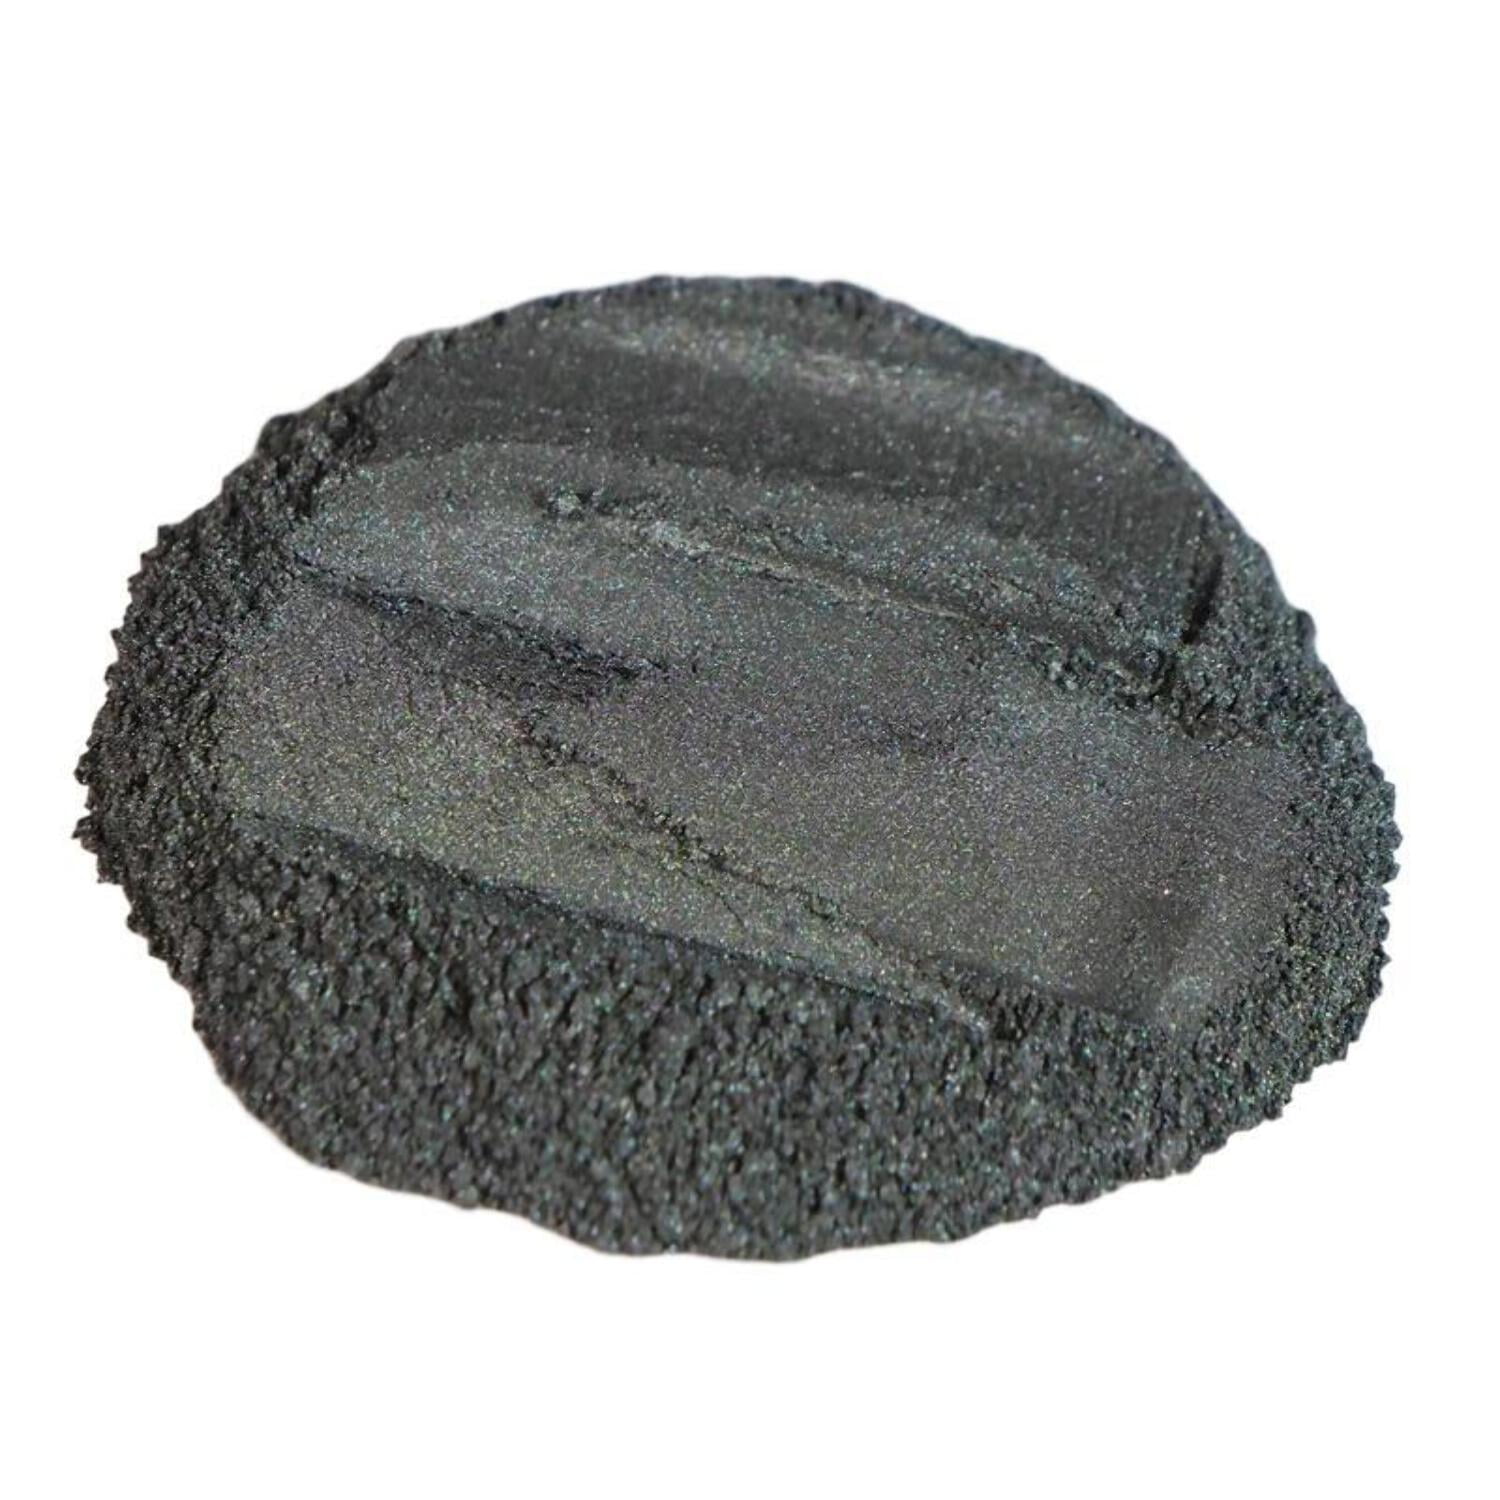 Black Glitter Powder (PolyColor) Colored Glitter for Epoxy Resin